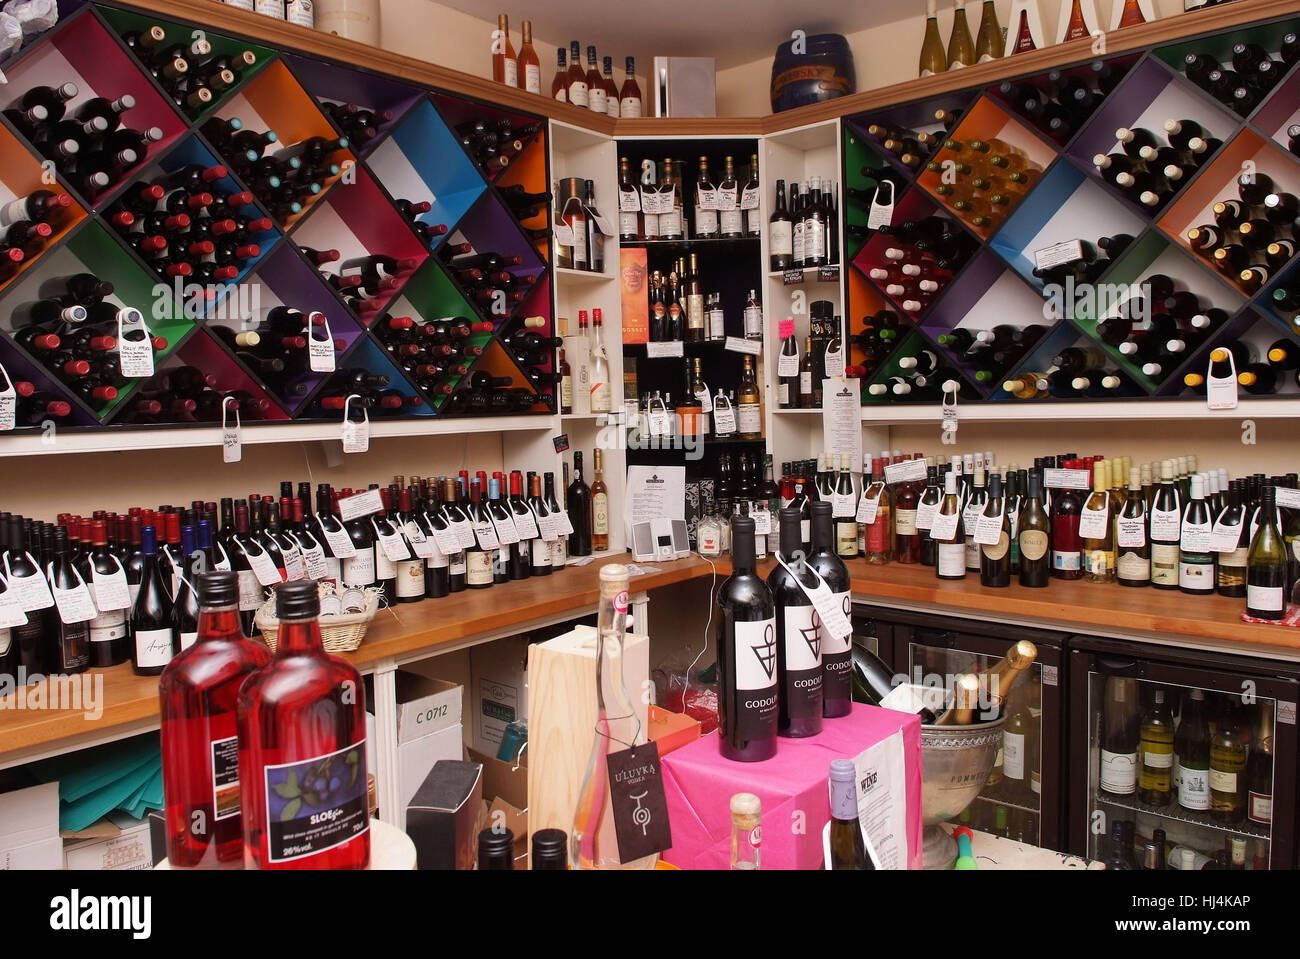 Thompson's wineshop in Pewsey, Wiltshire, UK Stock Photo